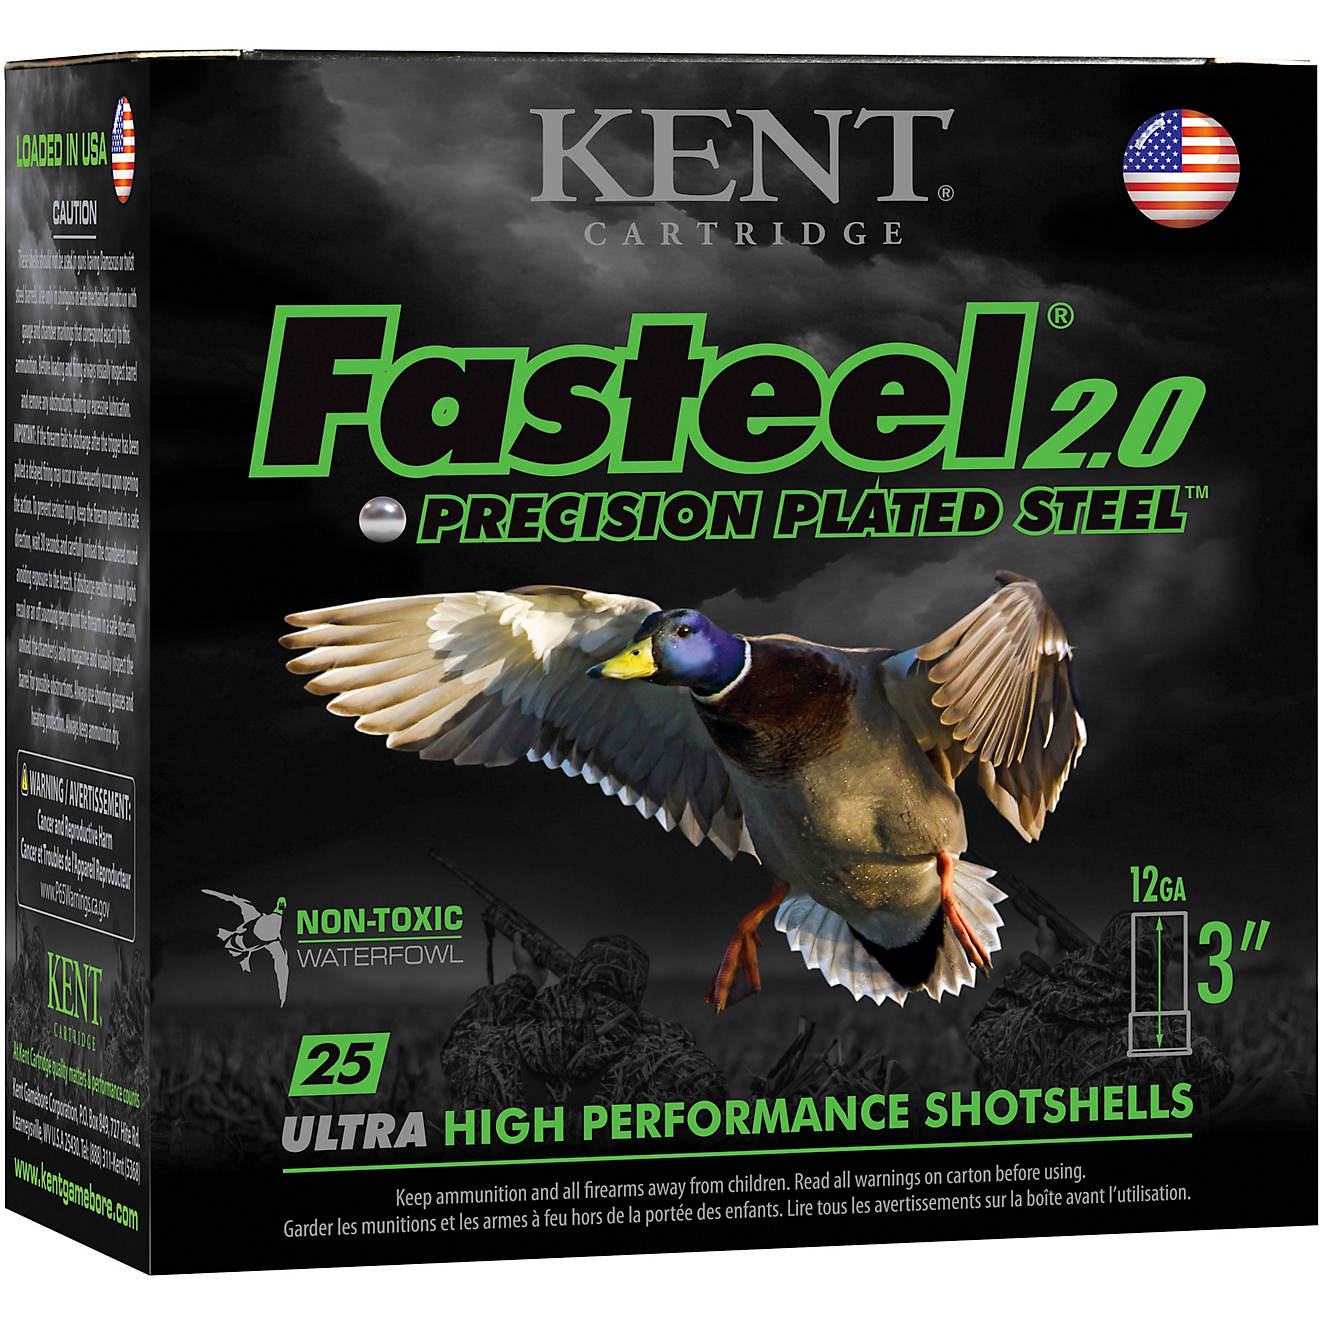 KENT Fasteel 2.0 Precision Plate Steel Waterfowl 12 Gauge Shotshells                                                             - view number 1